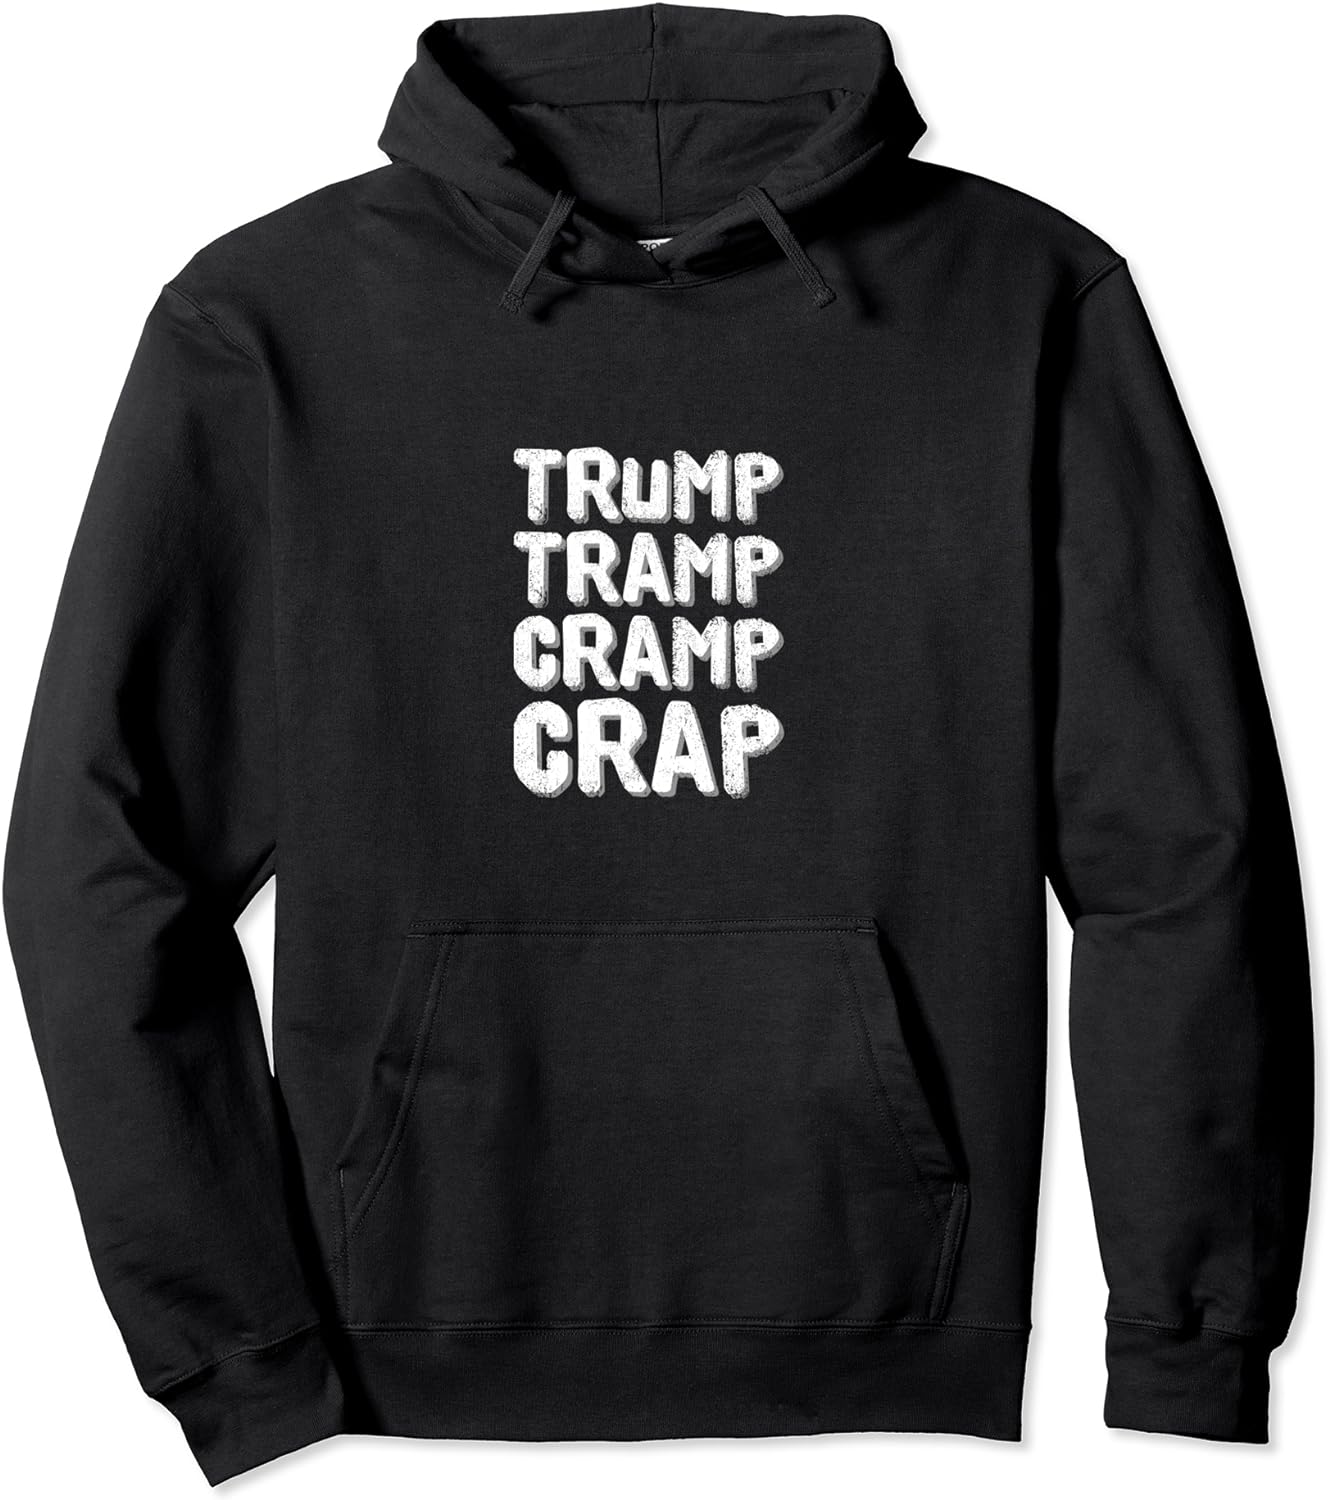 Trump-Tramp-Cramp-Crap word play Hoodie